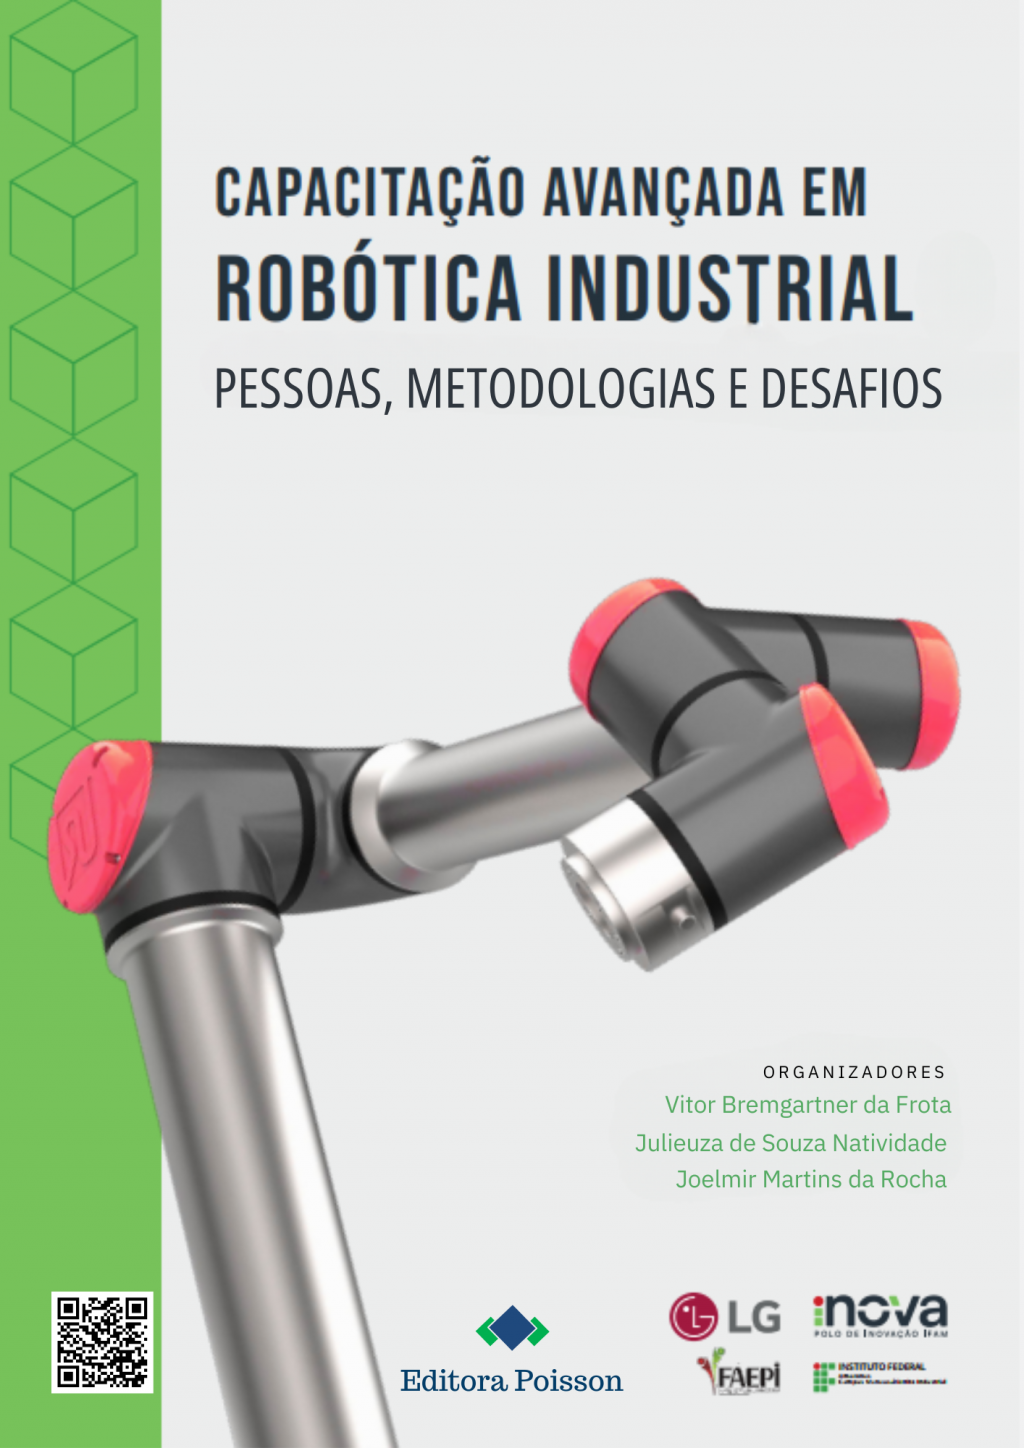 Capacitação avançada em robótica industrial: pessoas, metodologias e desafios